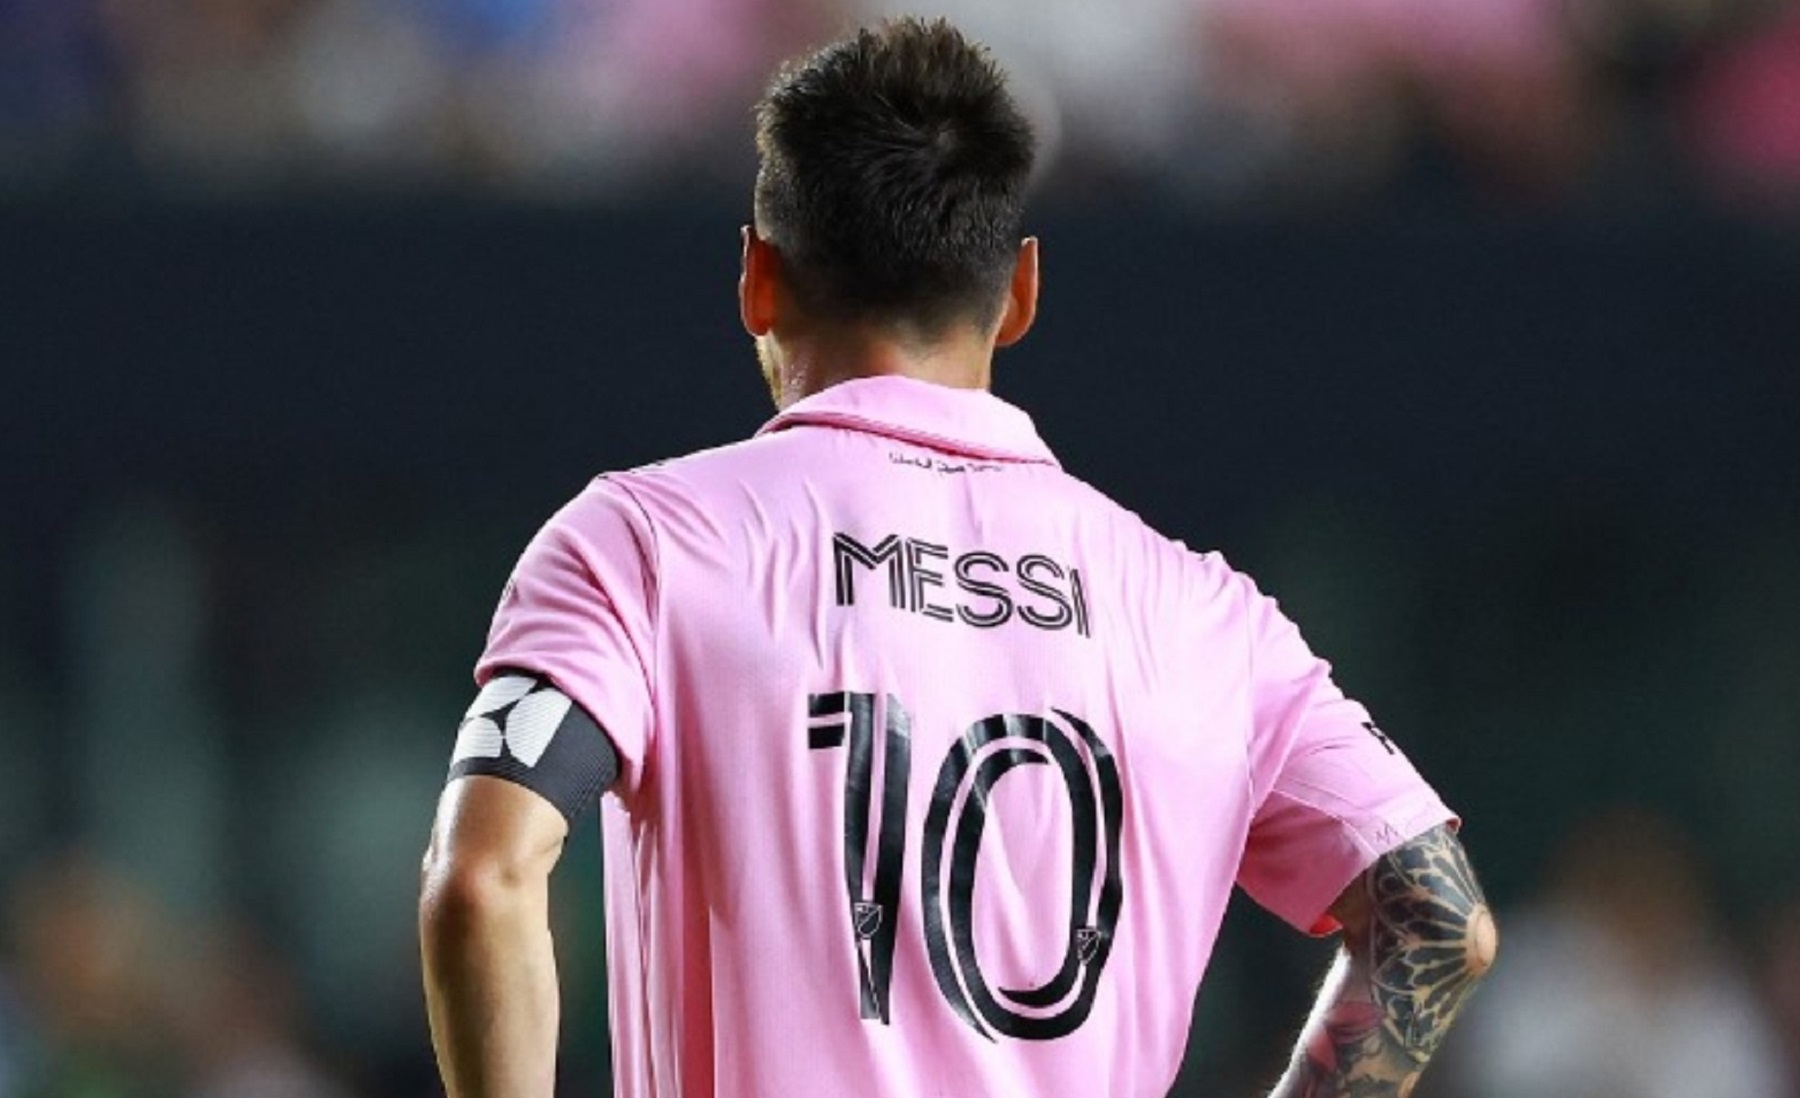 La camiseta de Messi es la más vendida de la MLS.